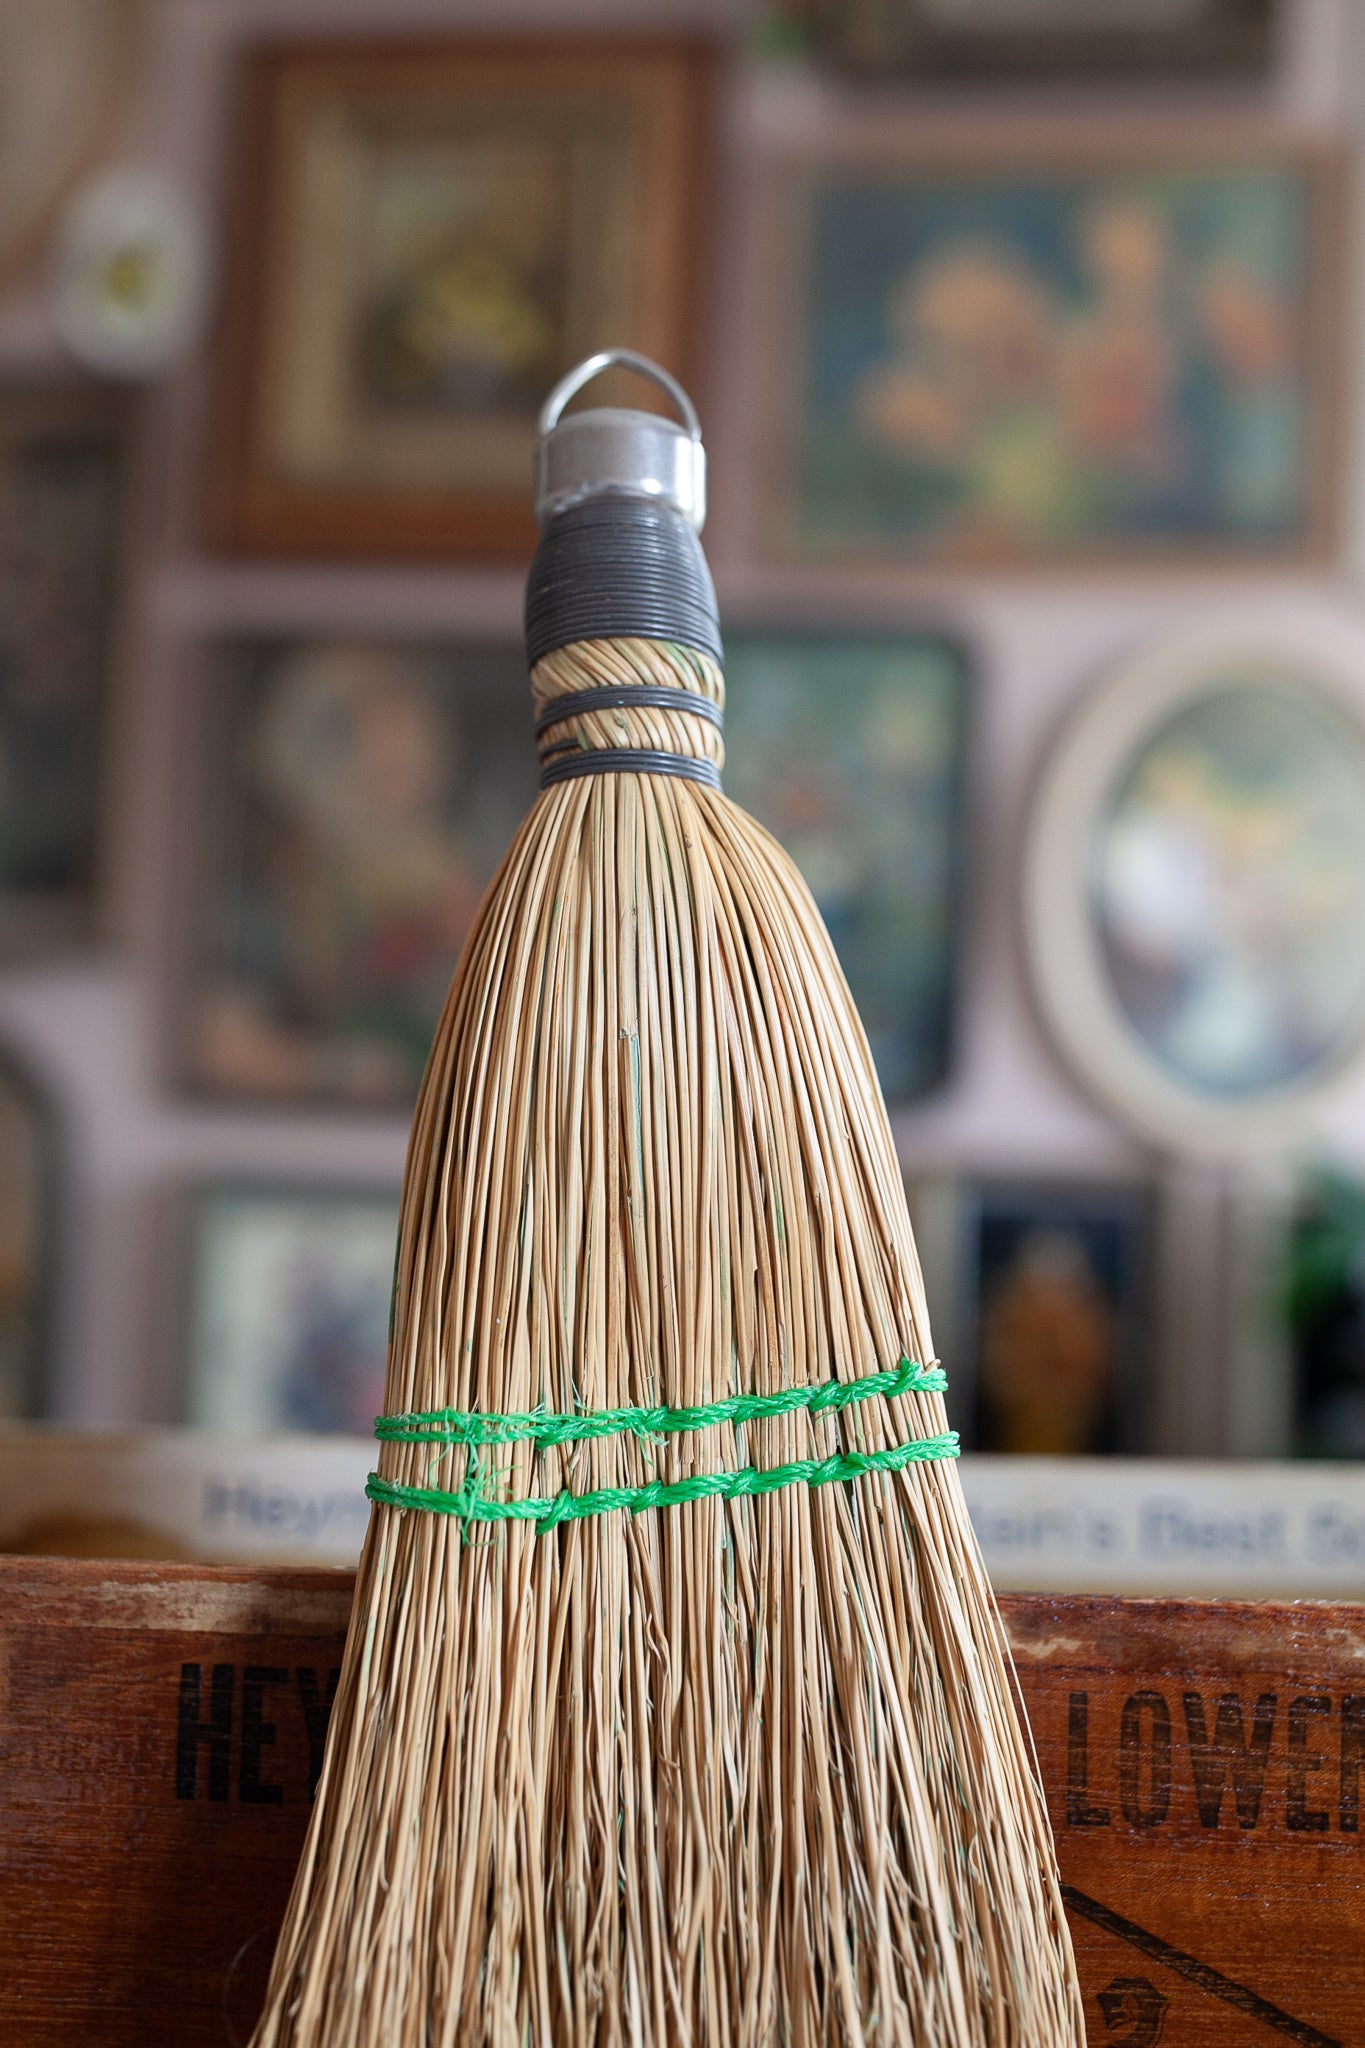 Vintage Whisk Broom -  Small Broom - Decorative broom